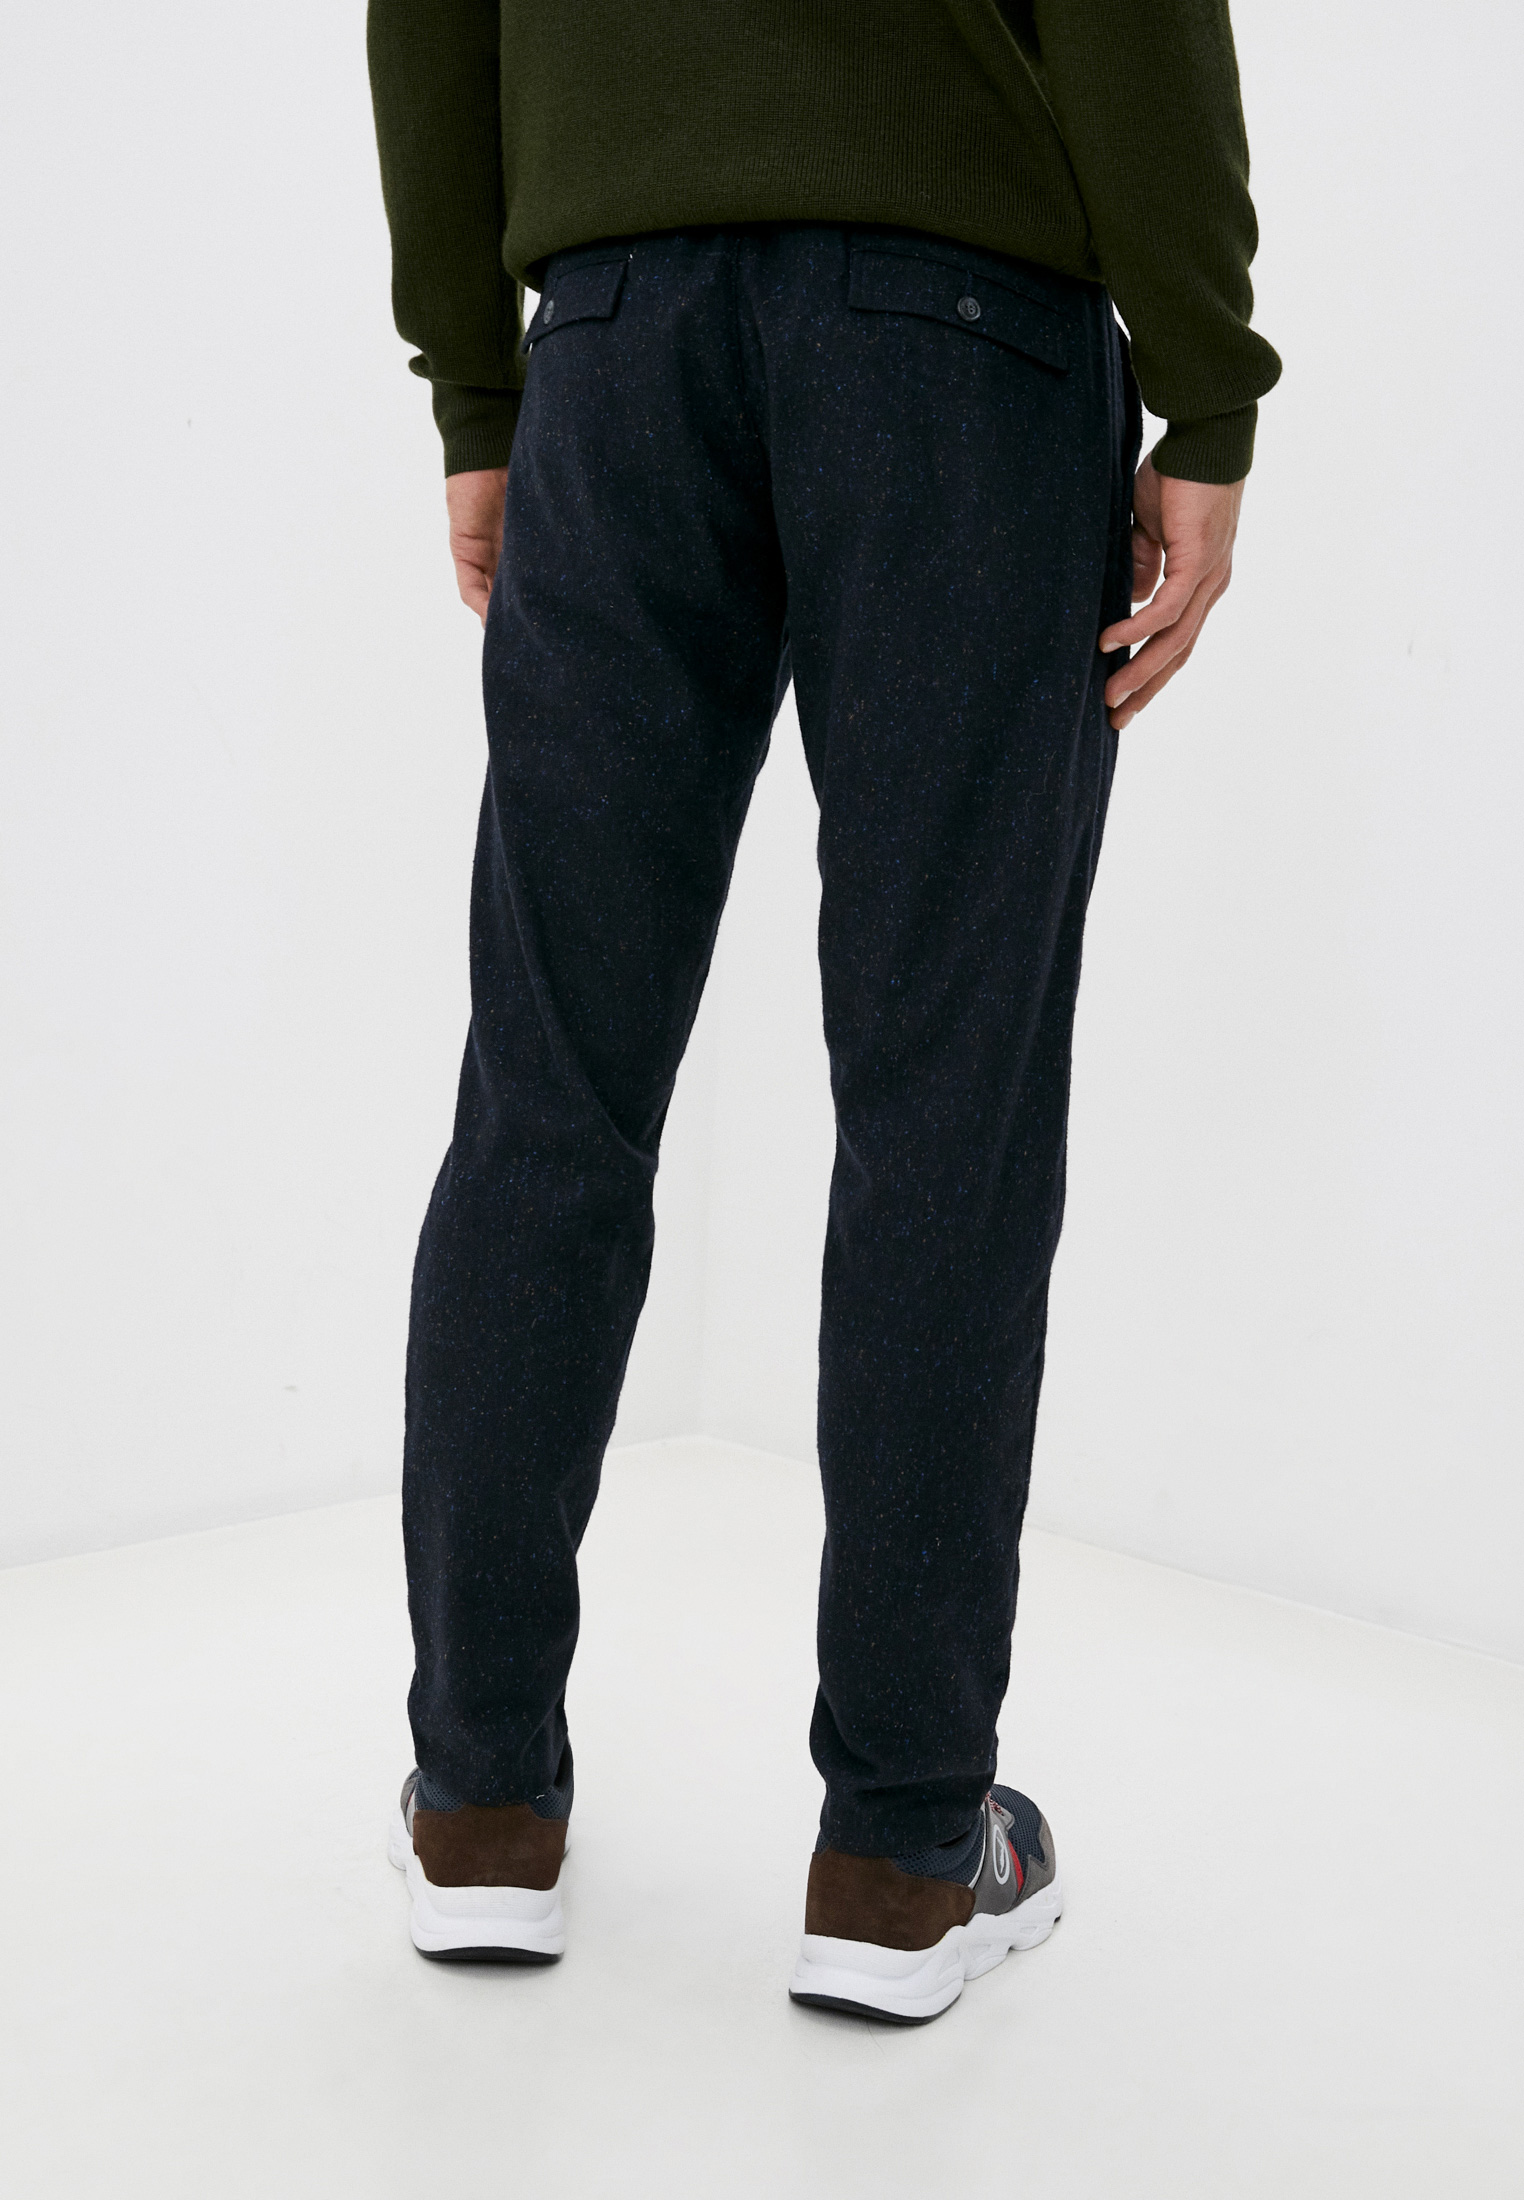 Мужские повседневные брюки Trussardi (Труссарди) 52P00061-1T001455-H-001: изображение 4